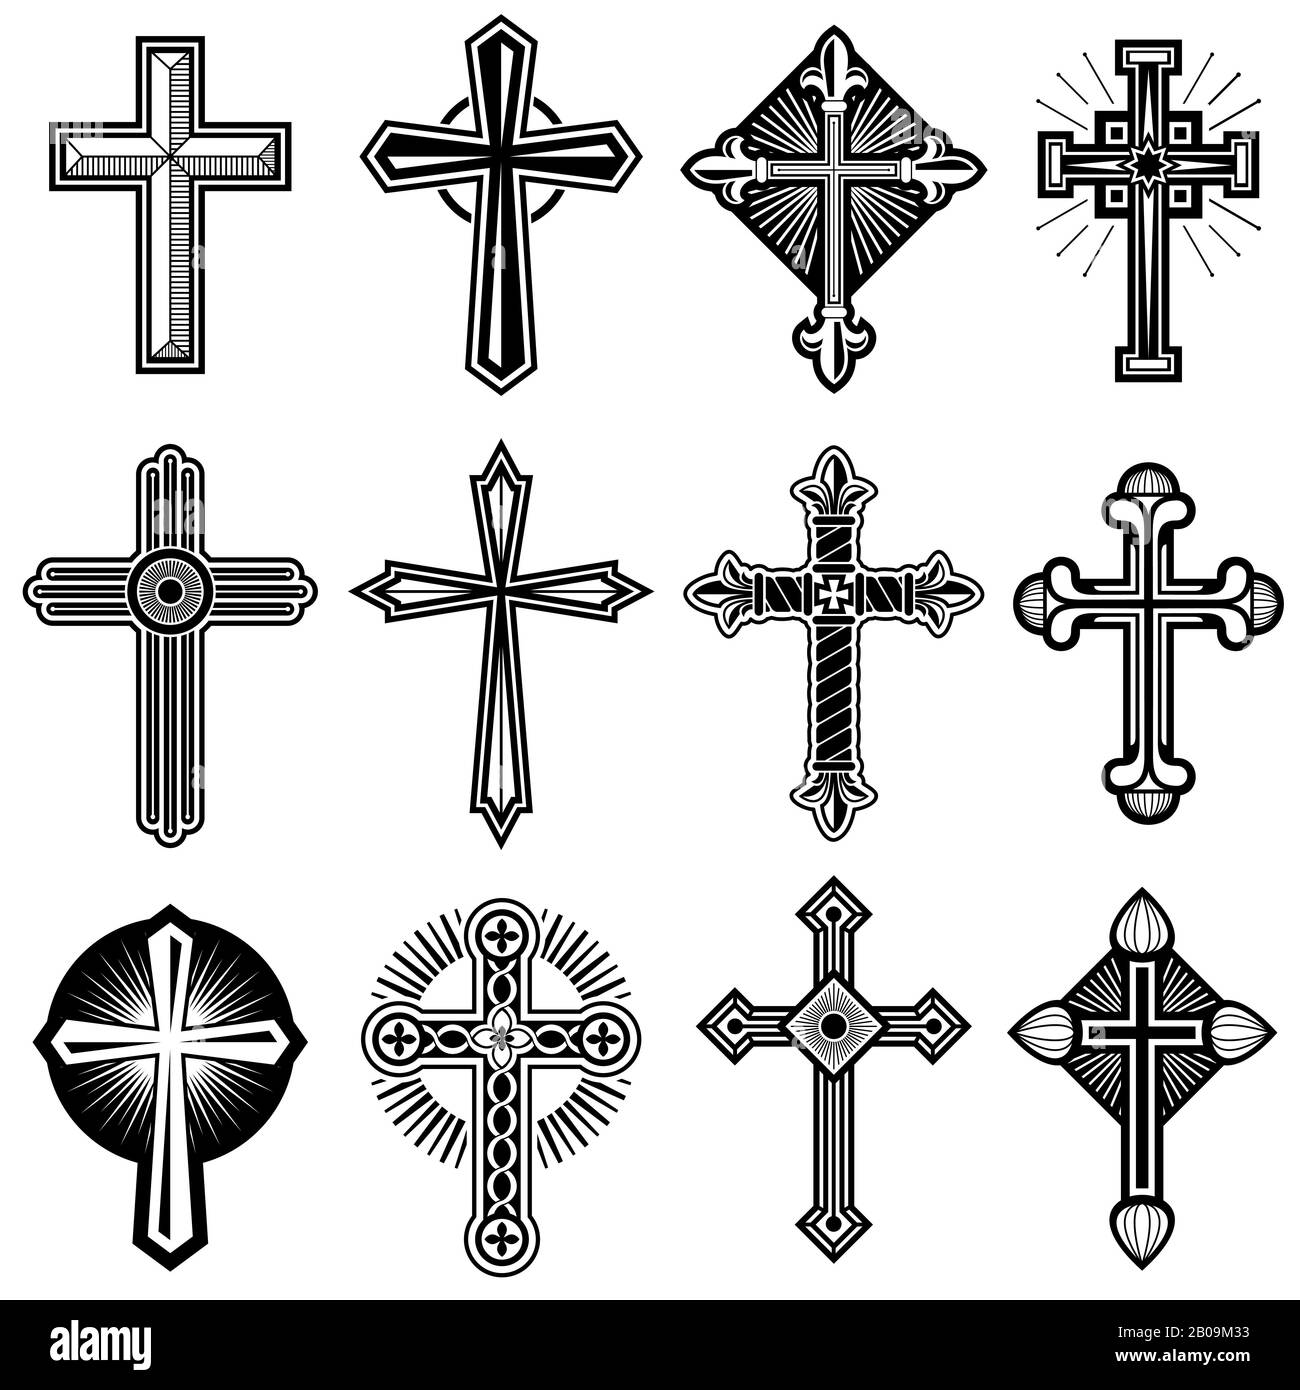 Croix chrétienne catholique avec des icônes vectorielles ornementales. Ensemble de croix religieuses, illustration de la croix noire blanche du christ Illustration de Vecteur